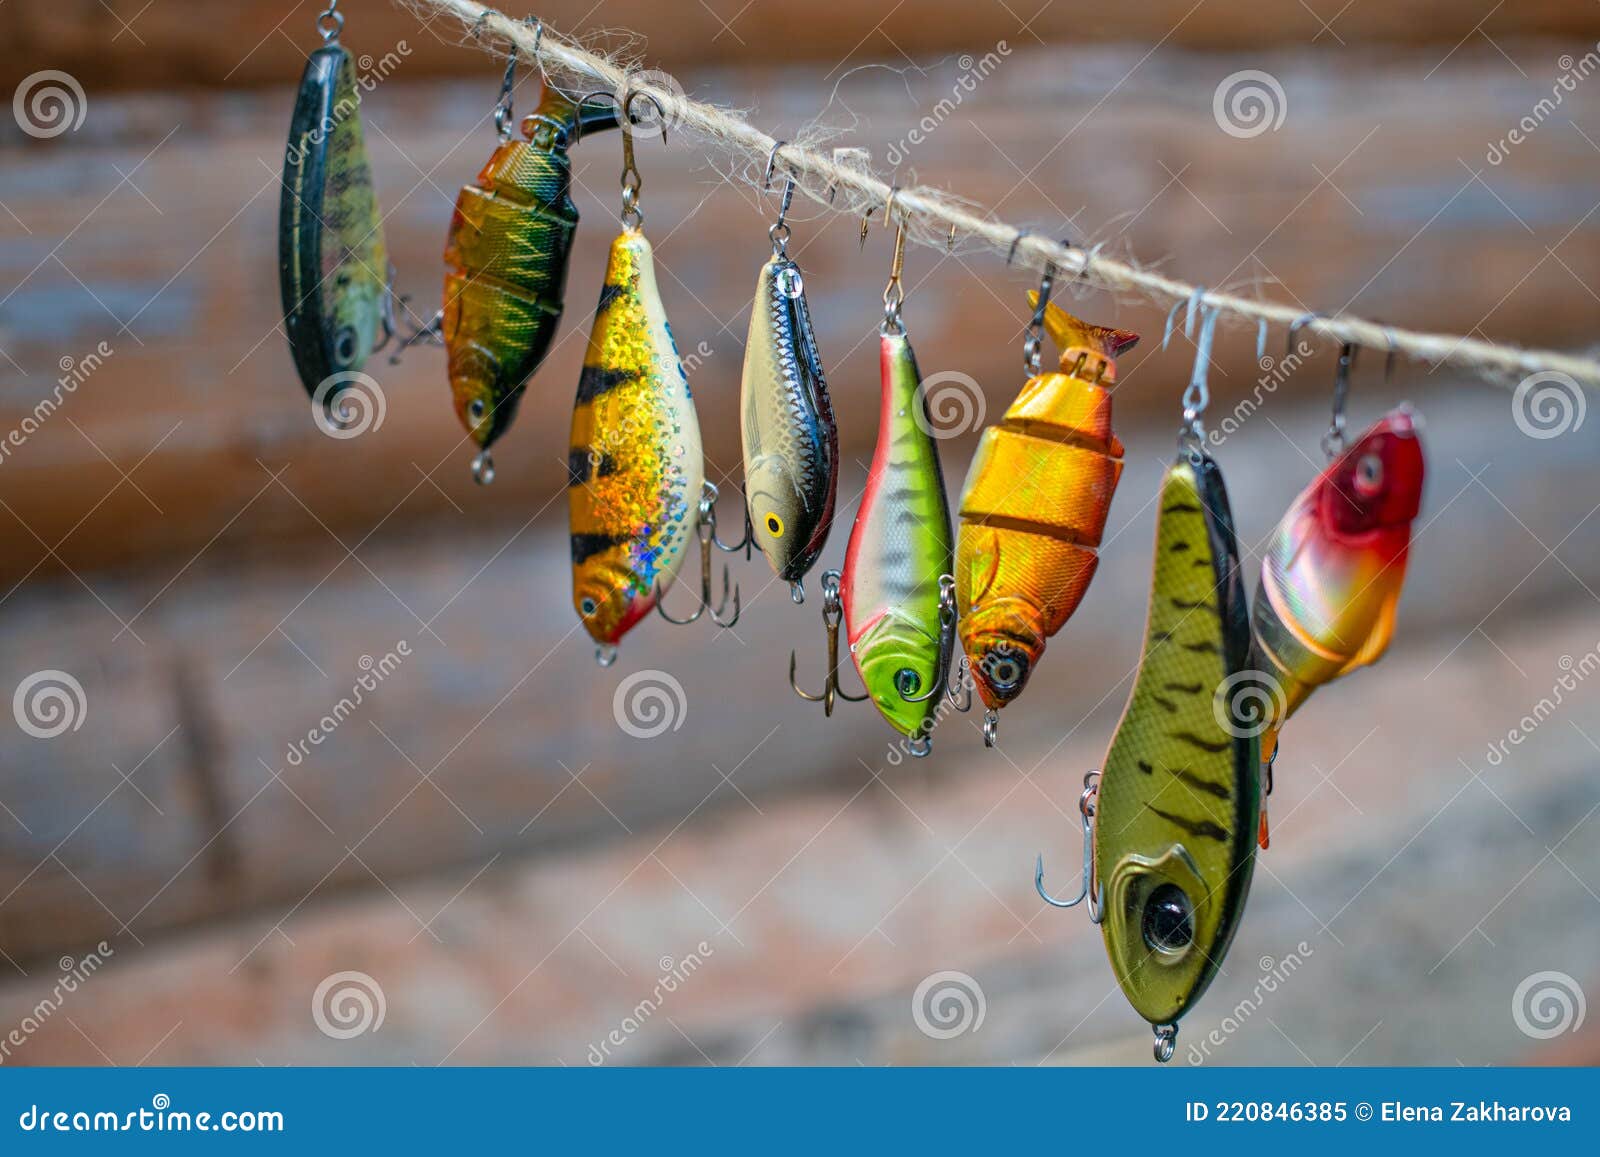 Señuelos De Pesca Y Aparejos En Forma De Peces Brillantes. Juegos De  Accesorios Para La Pesca. Imagen de archivo - Imagen de accesorios, pesca:  220846385